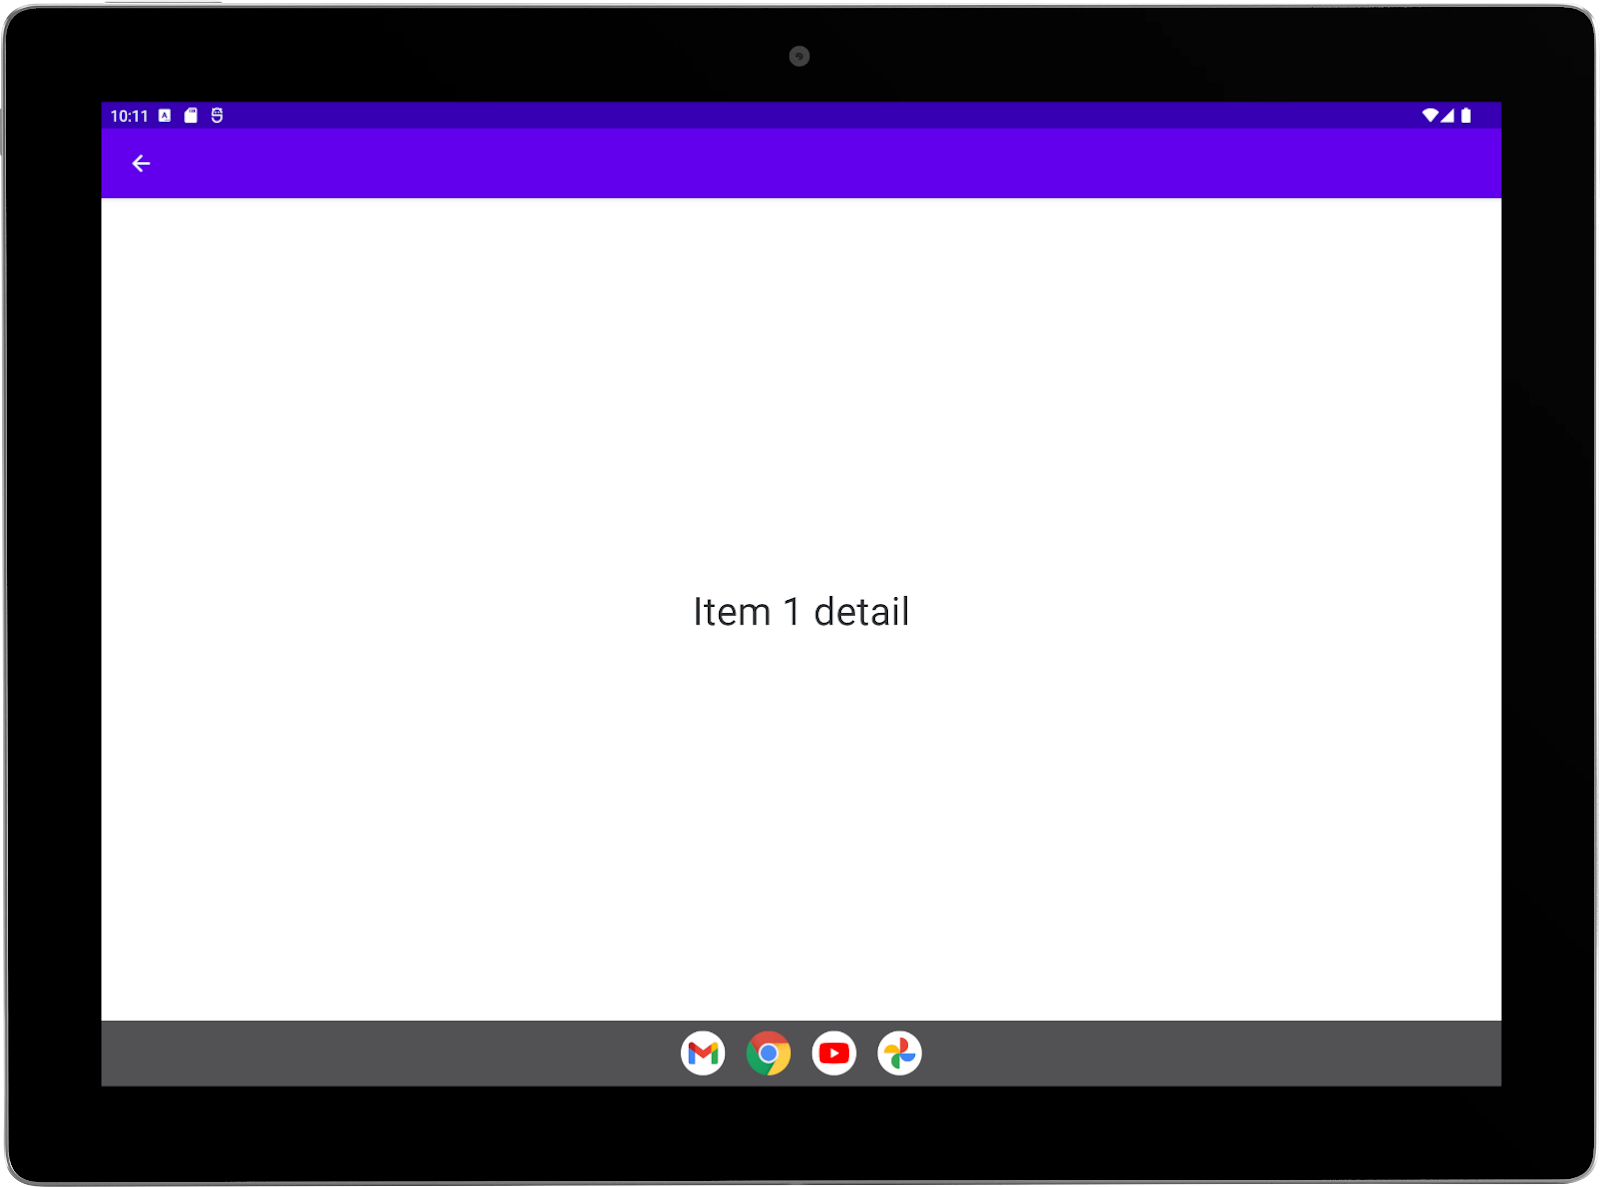 Grande tablette avec une application exemple exécutée en mode paysage Activité "Détail" en plein écran